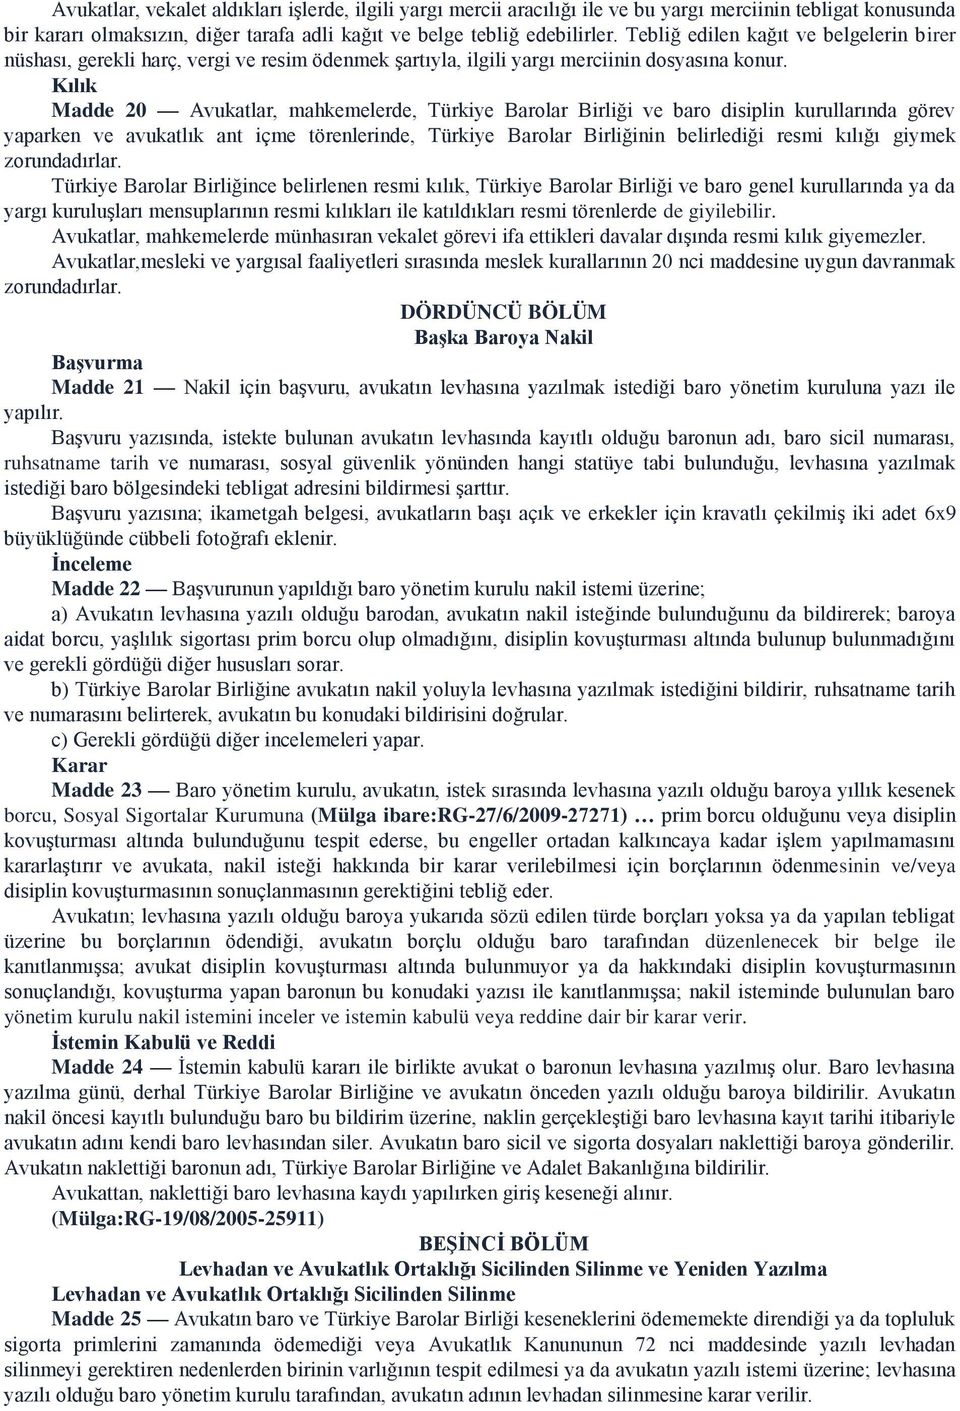 Kılık Madde 20 Avukatlar, mahkemelerde, Türkiye Barolar Birliği ve baro disiplin kurullarında görev yaparken ve avukatlık ant içme törenlerinde, Türkiye Barolar Birliğinin belirlediği resmi kılığı